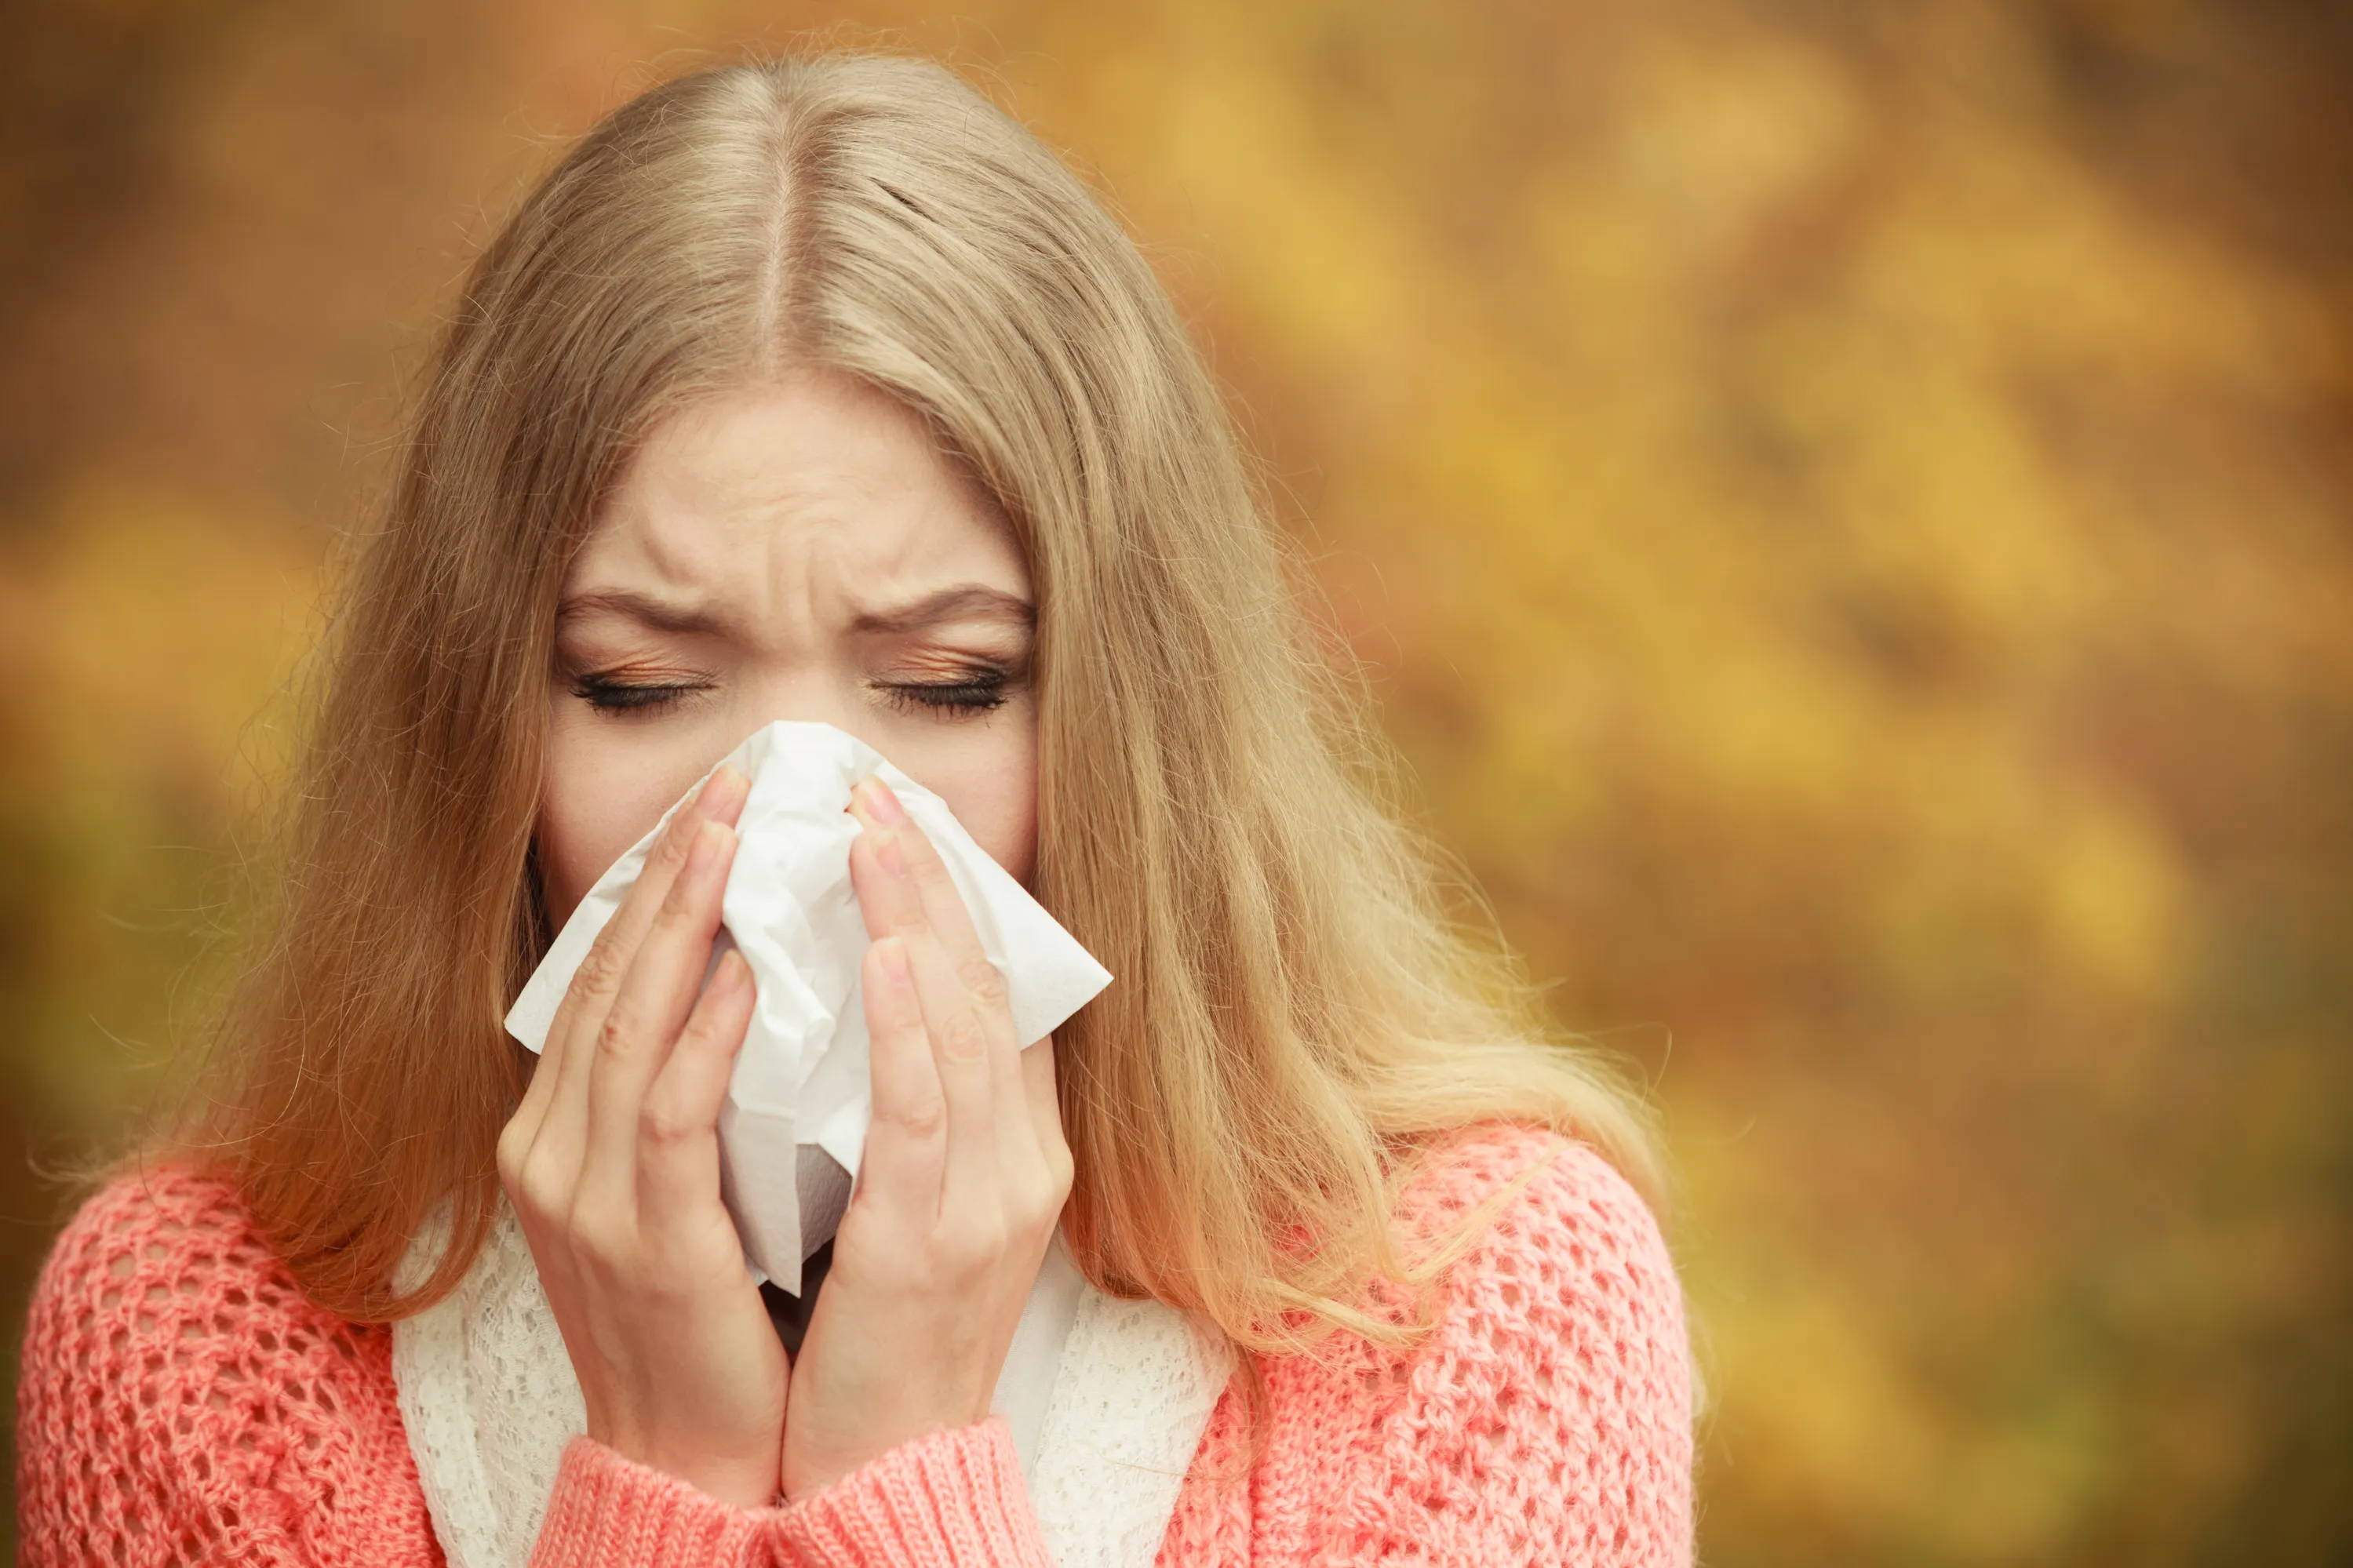 En plaget kvinne holder et lommetørkle over munn og nese. Lignende symptomer gjør at det kan være vanskelig å skille mellom pollenallergi og forkjølelse.